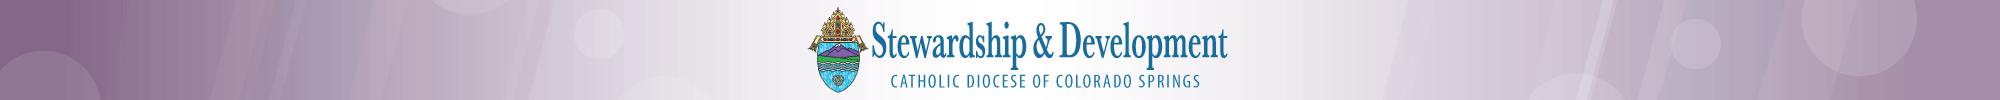 logo-banner-Stewardship-homepage-2000x100-NEW